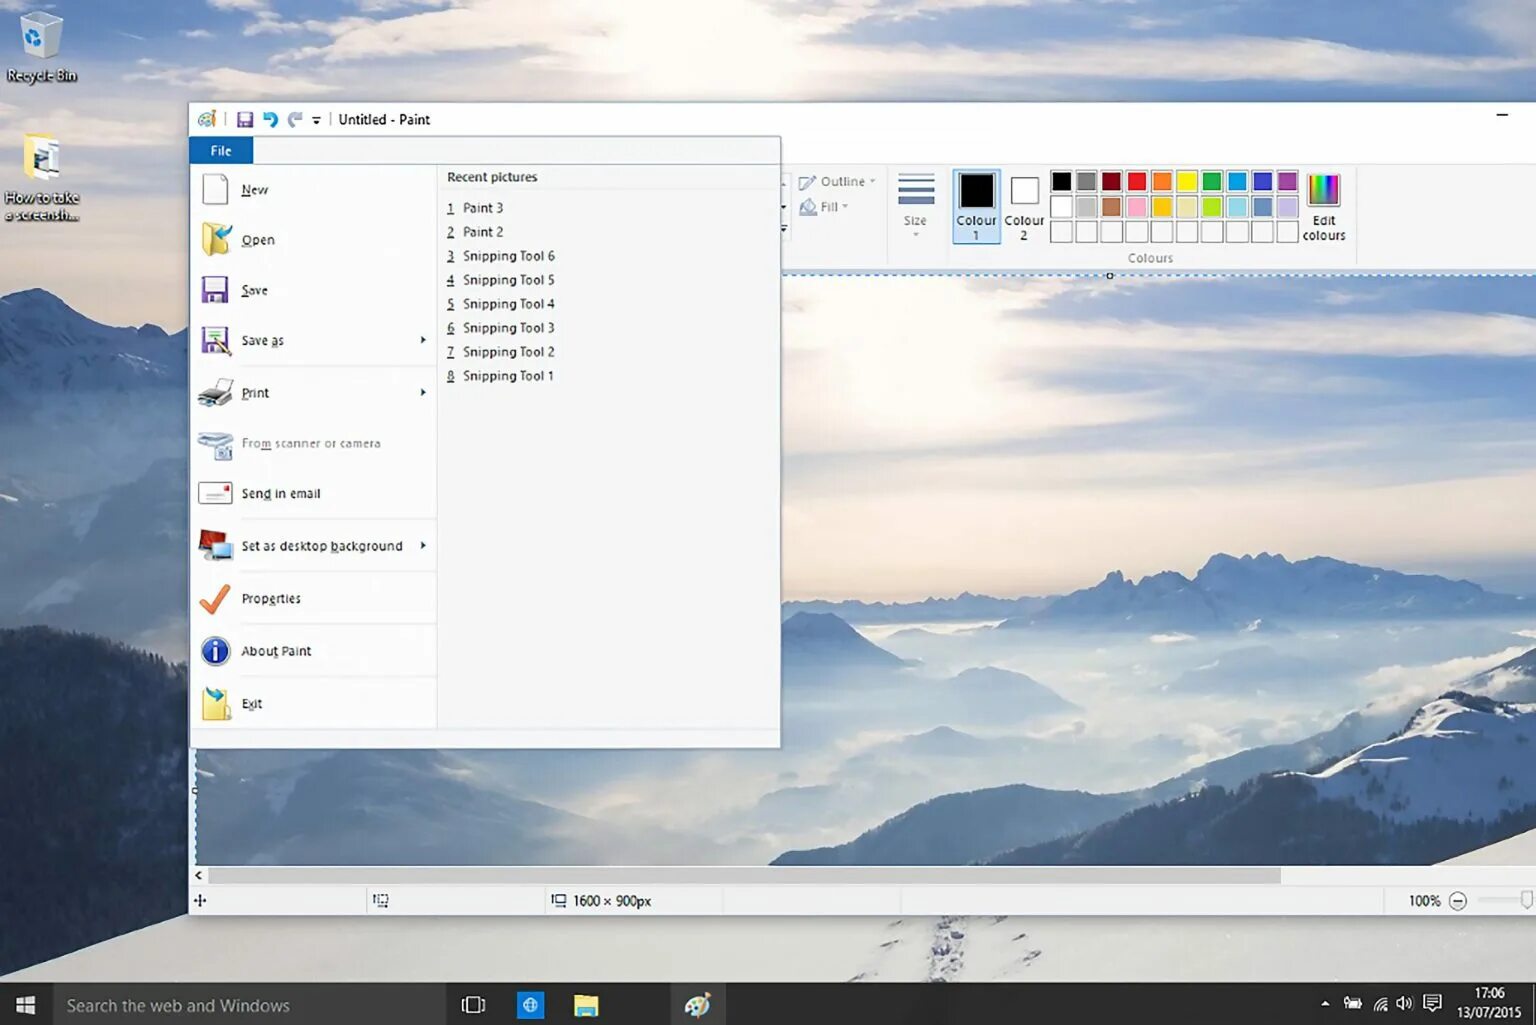 Как делать скриншоты на компьютере windows 10. Снимок экрана компьютера виндовс 10. Снимки экрана Windows 10. Виндовс 10 Скриншот экрана. Скриншот экрана на компьютере виндовс 10.